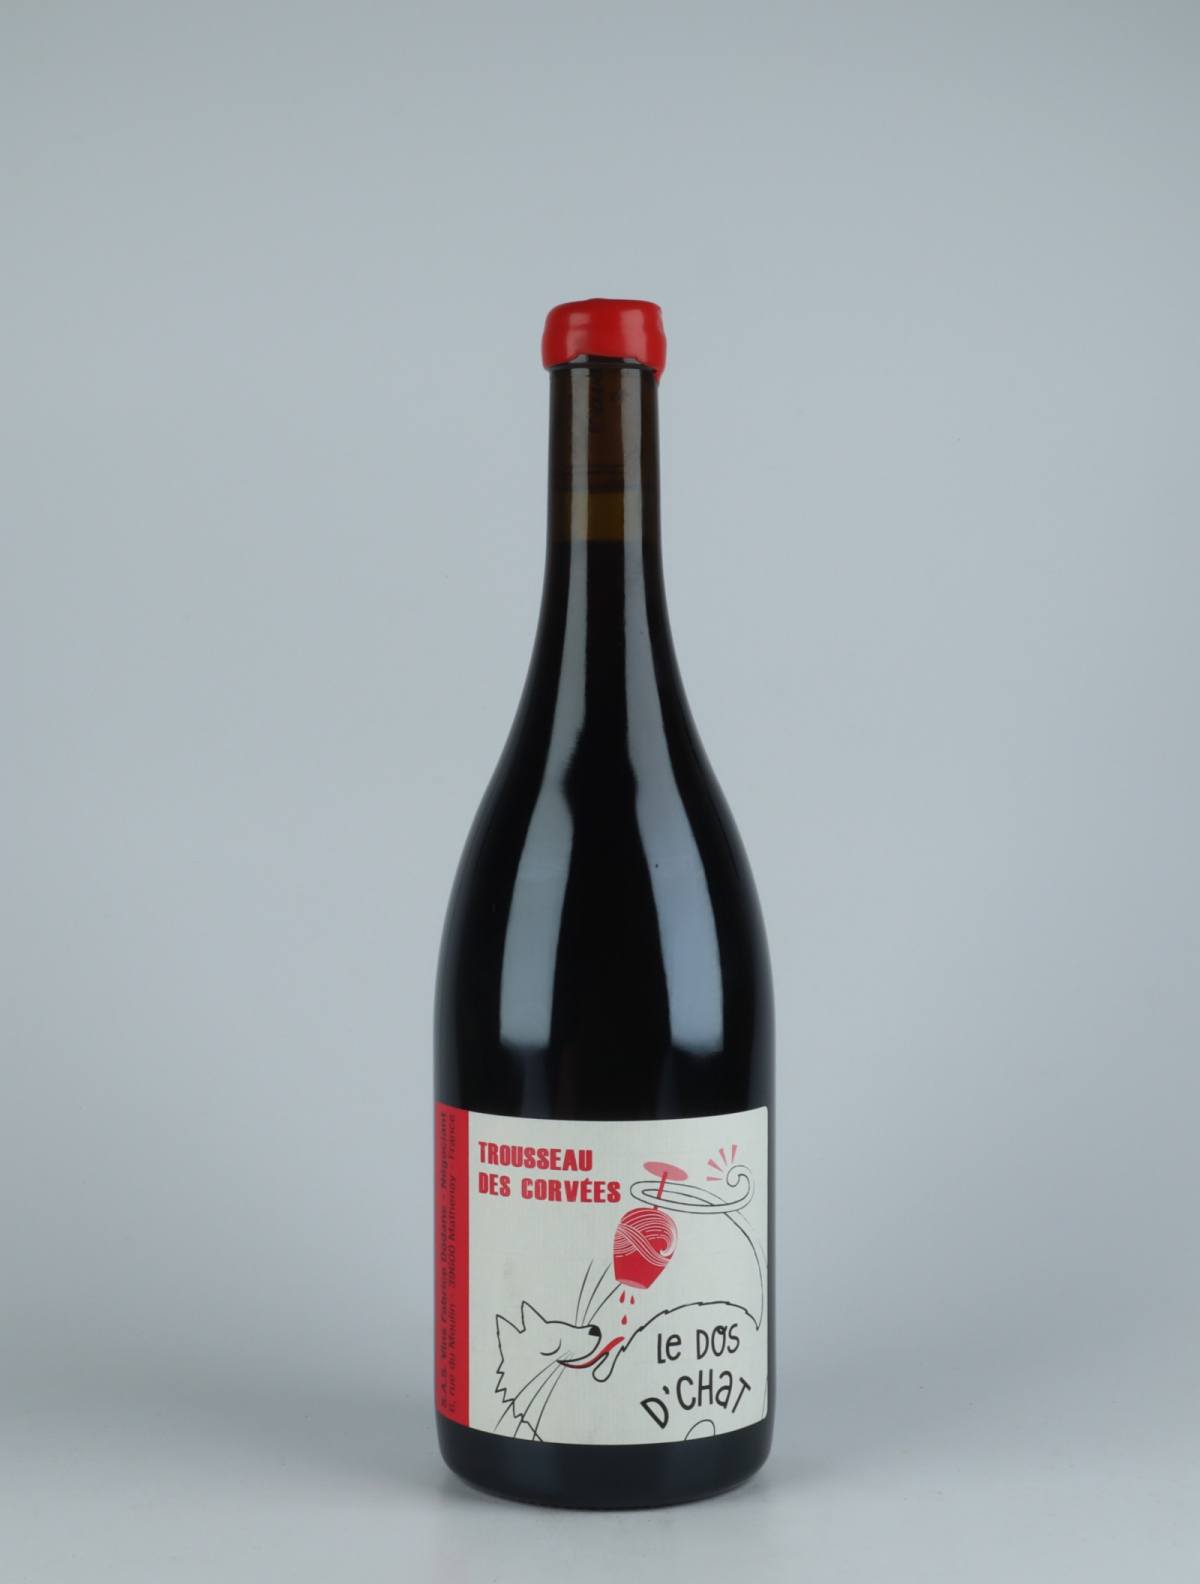 A bottle 2019 Trousseau des Corvées Red wine from Fabrice Dodane, Jura in France